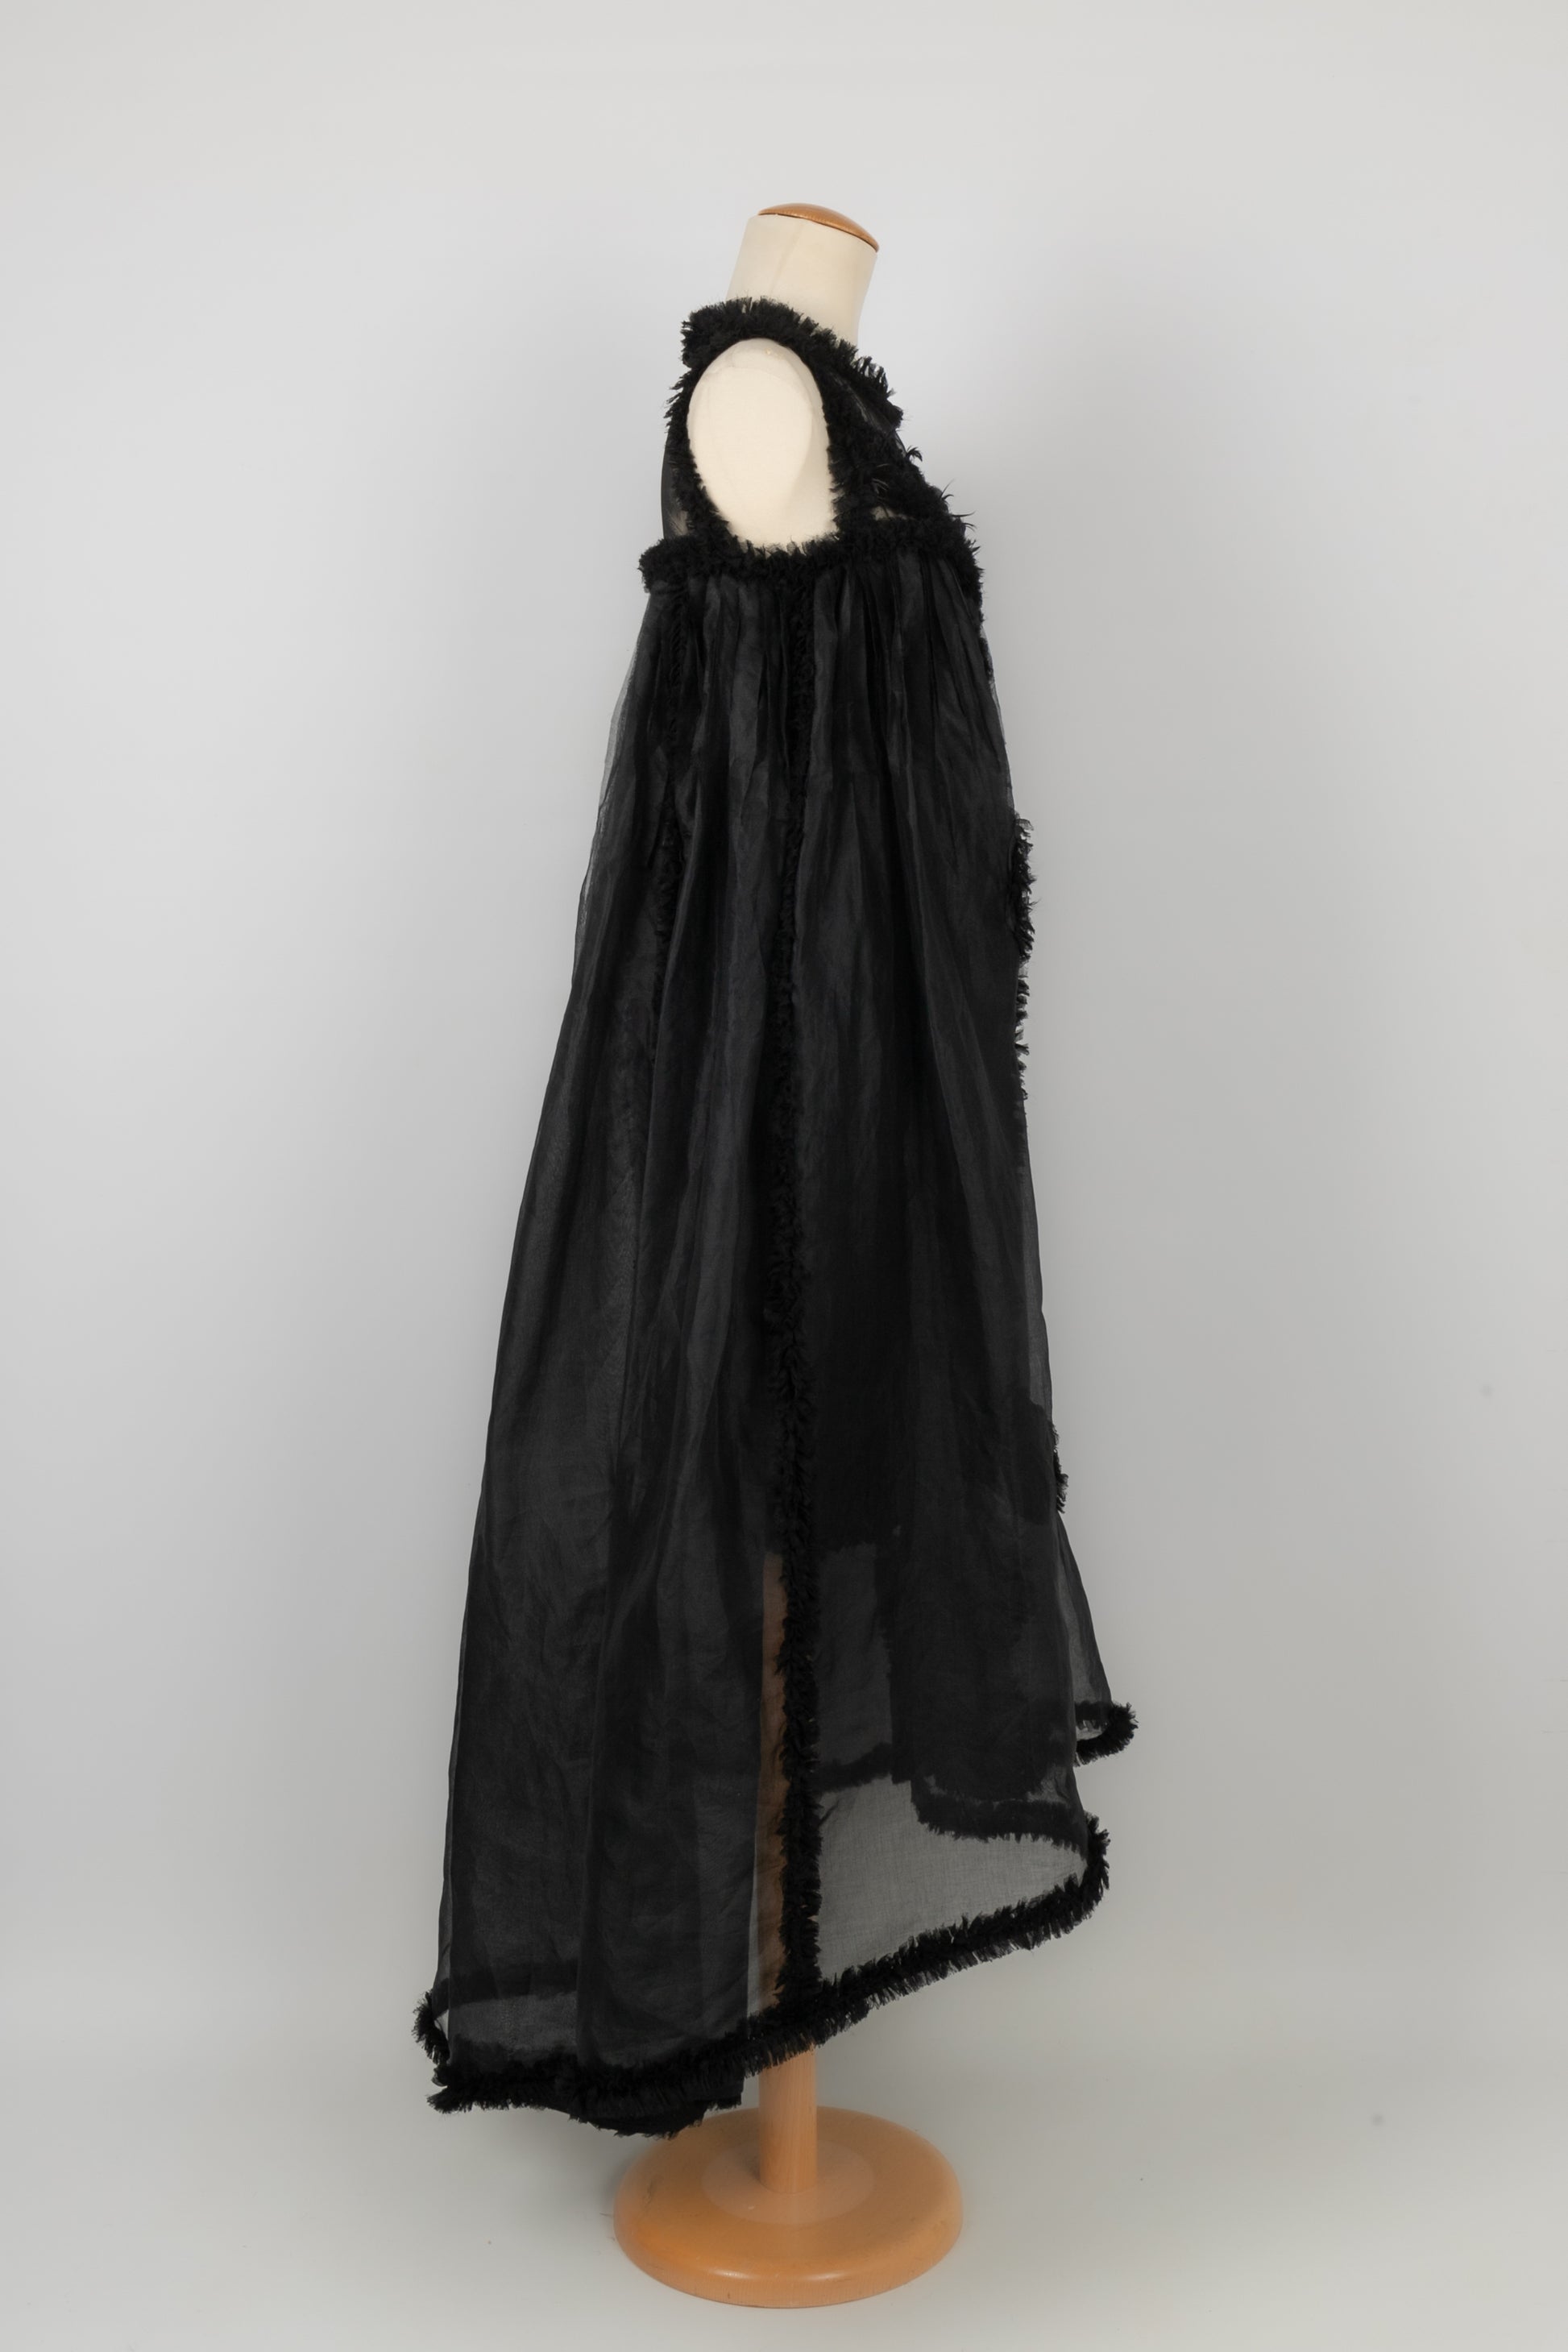 Robe noire Chanel 1990's